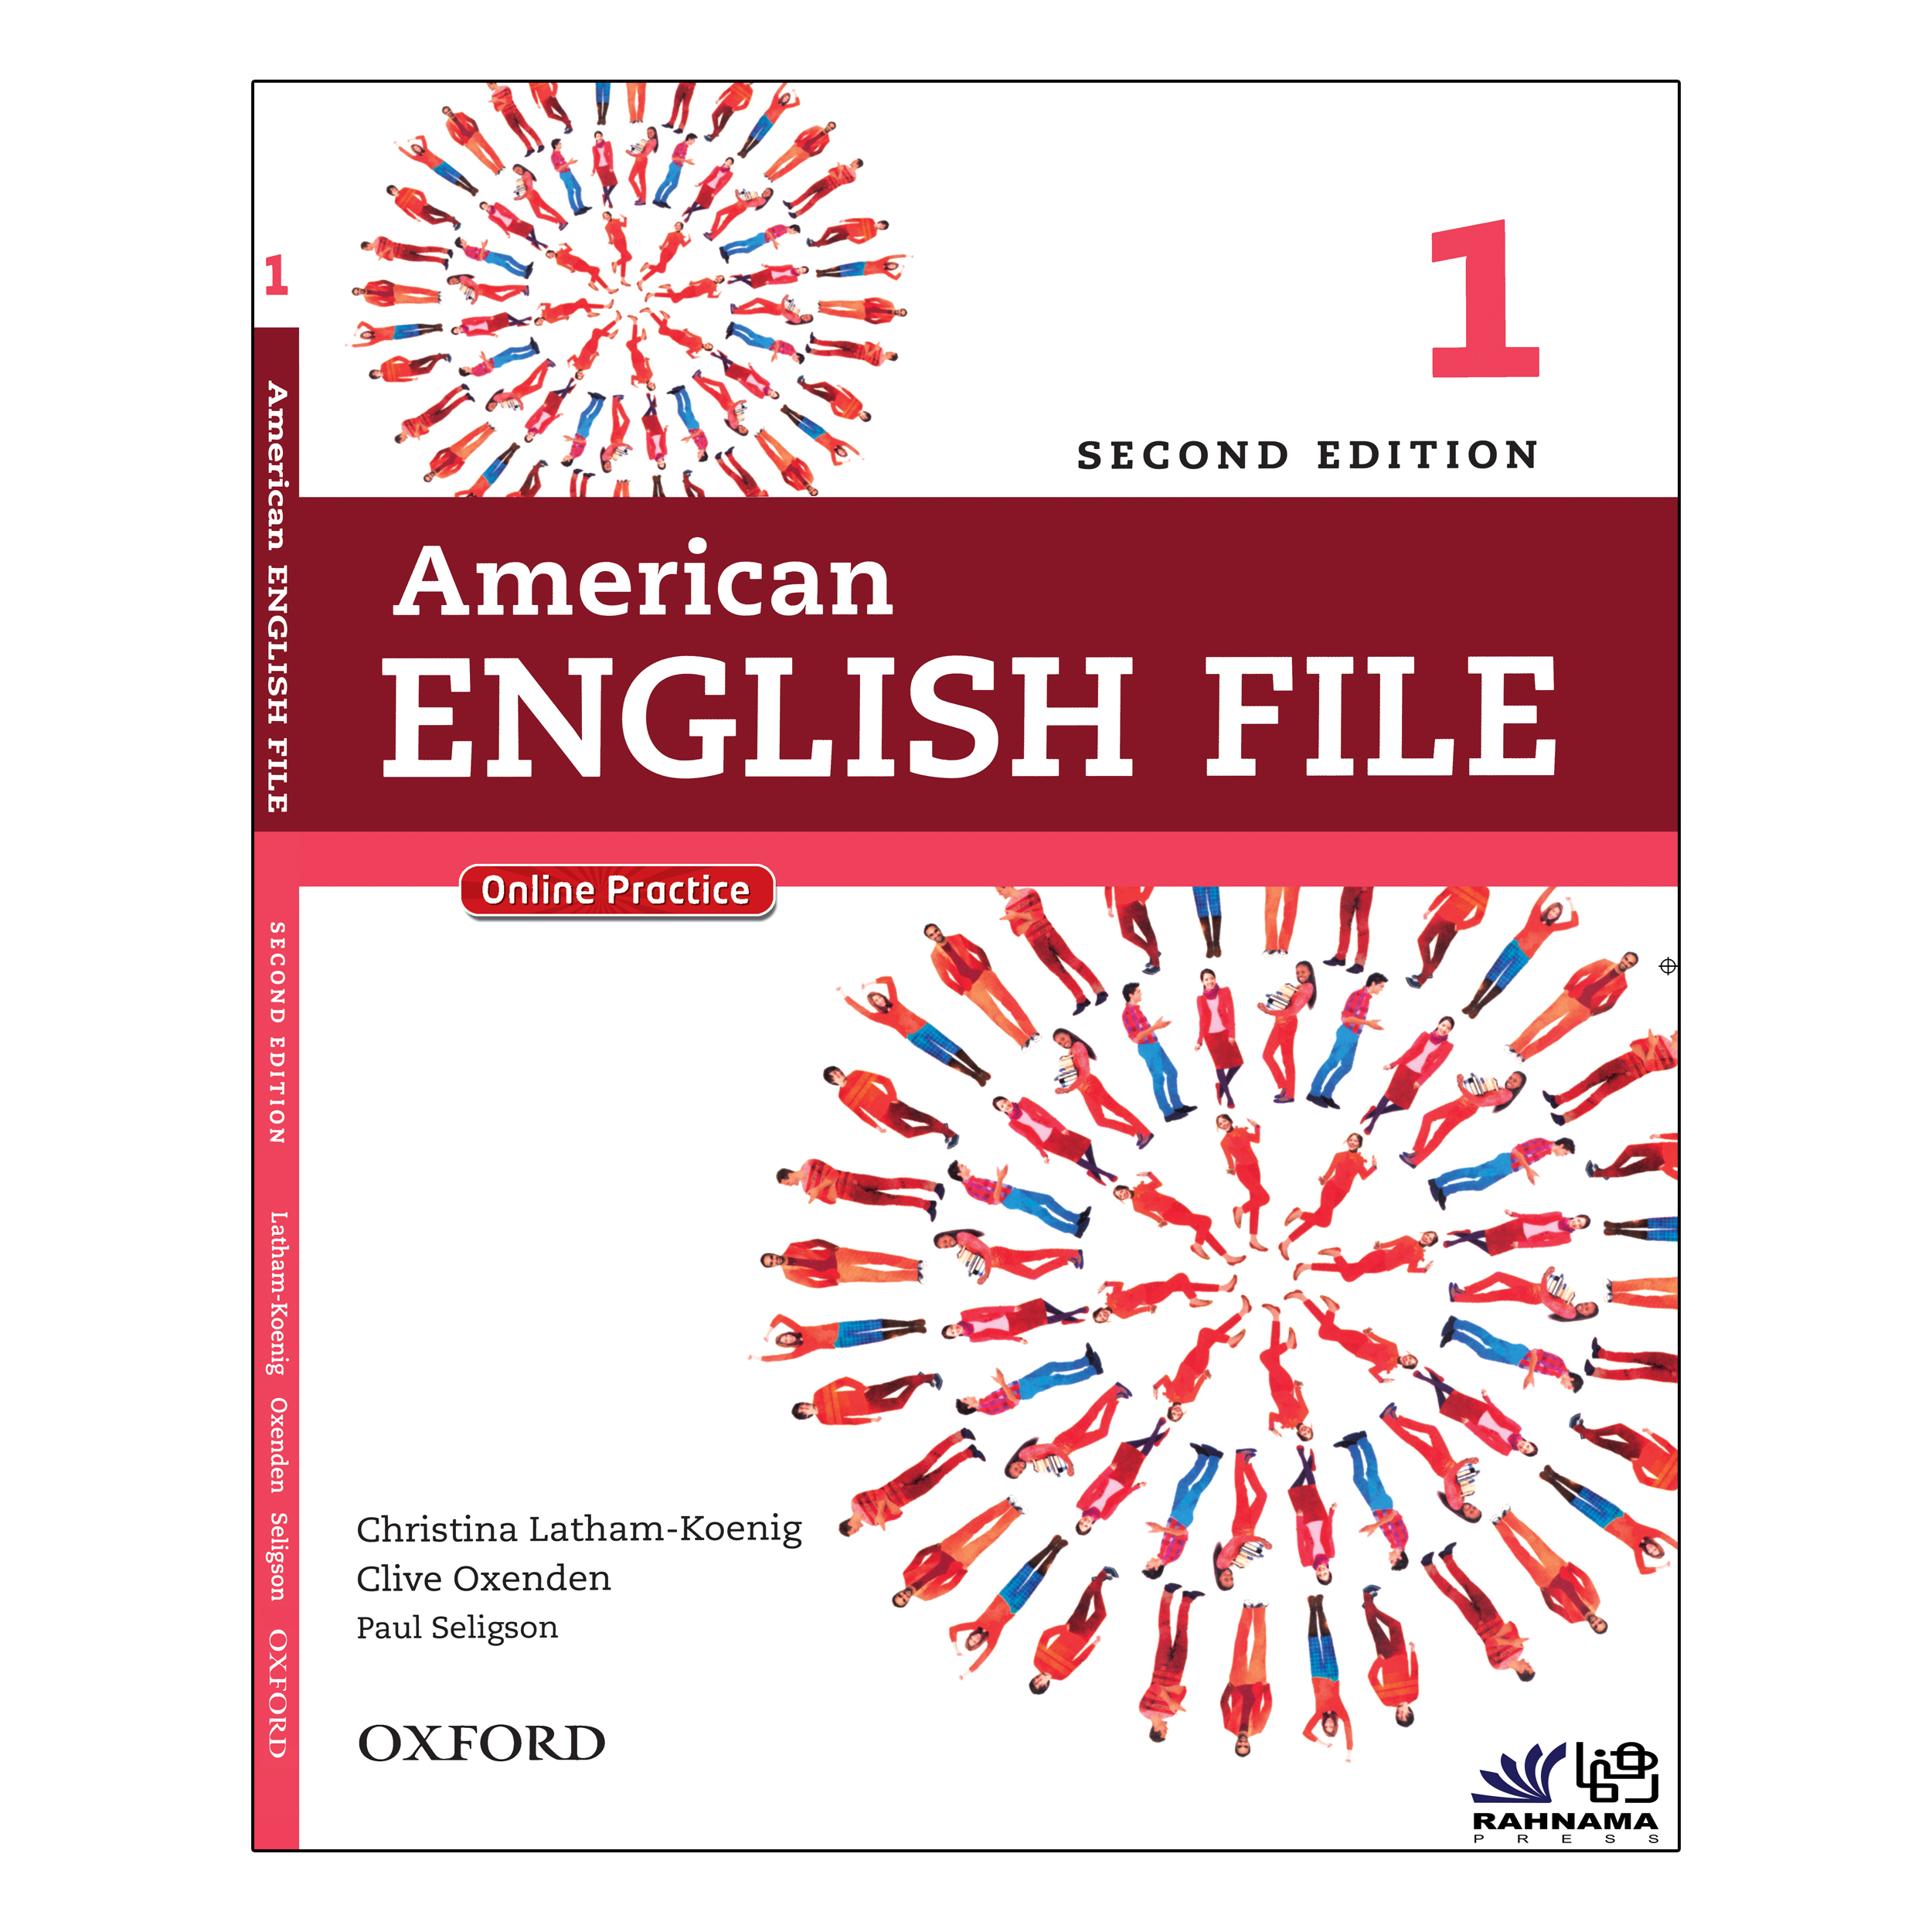 نقد و بررسی کتاب AMERICAN ENGLISH FILE 1 اثر جمعی از نویسندگان انتشارات رهنما توسط خریداران